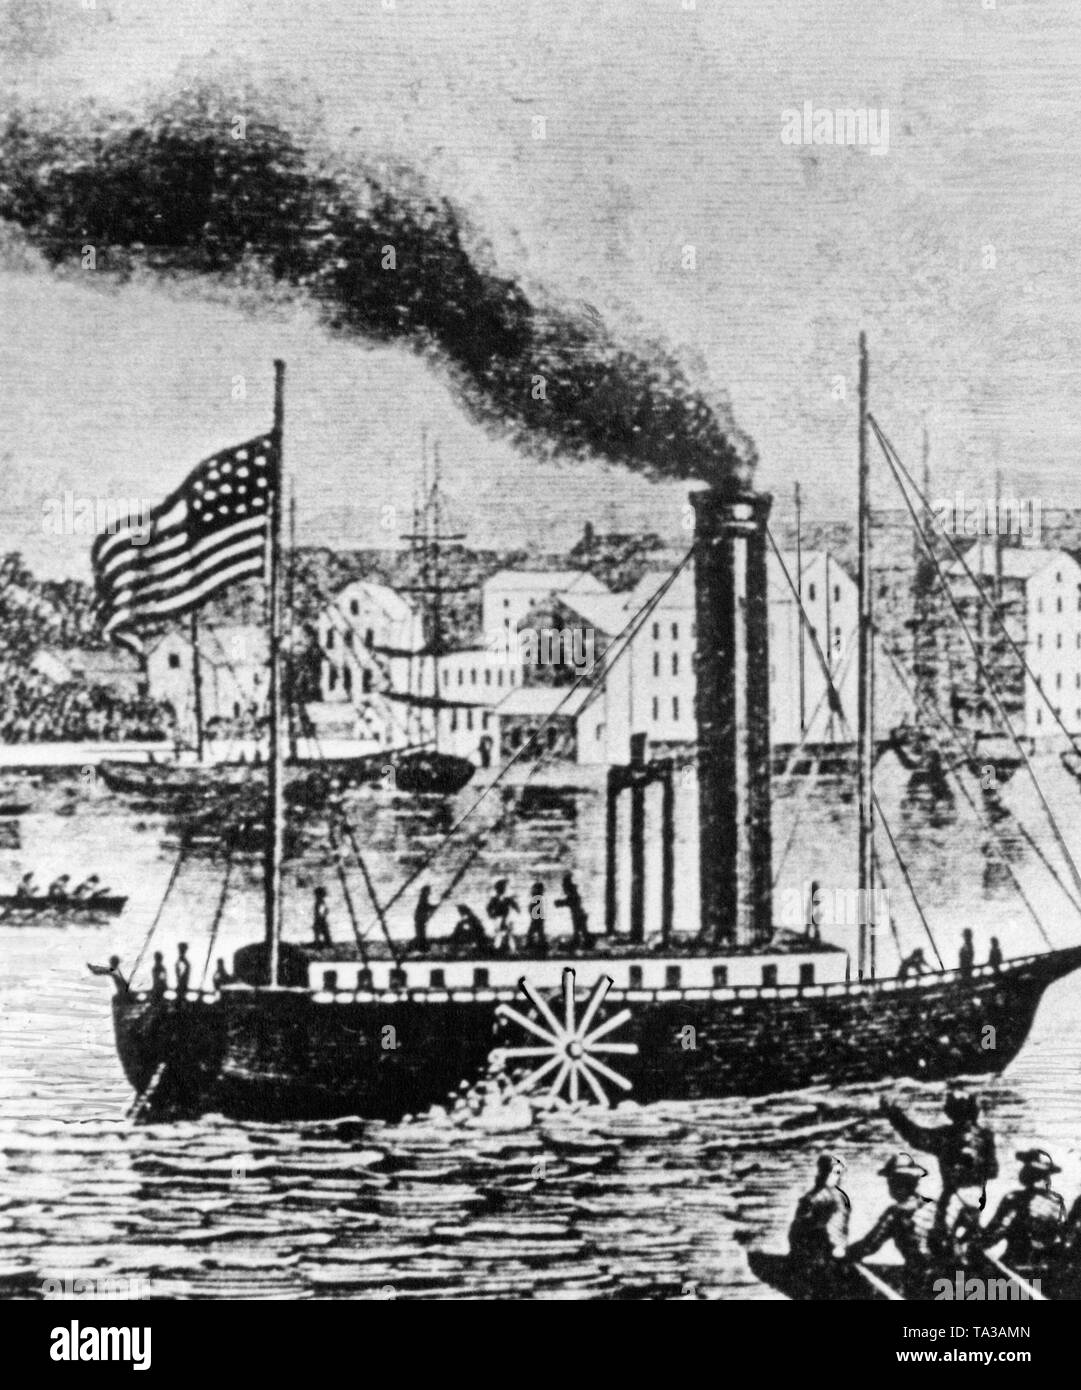 Die 'North River Steamboat" (auch: "Clermont") der Ingenieur Robert Fulton war der erste kommerziell erfolgreiche Steamboat in der Welt. Das Bild zeigt die "Clermont" auf Jungfernfahrt auf den Hudson River. Stockfoto